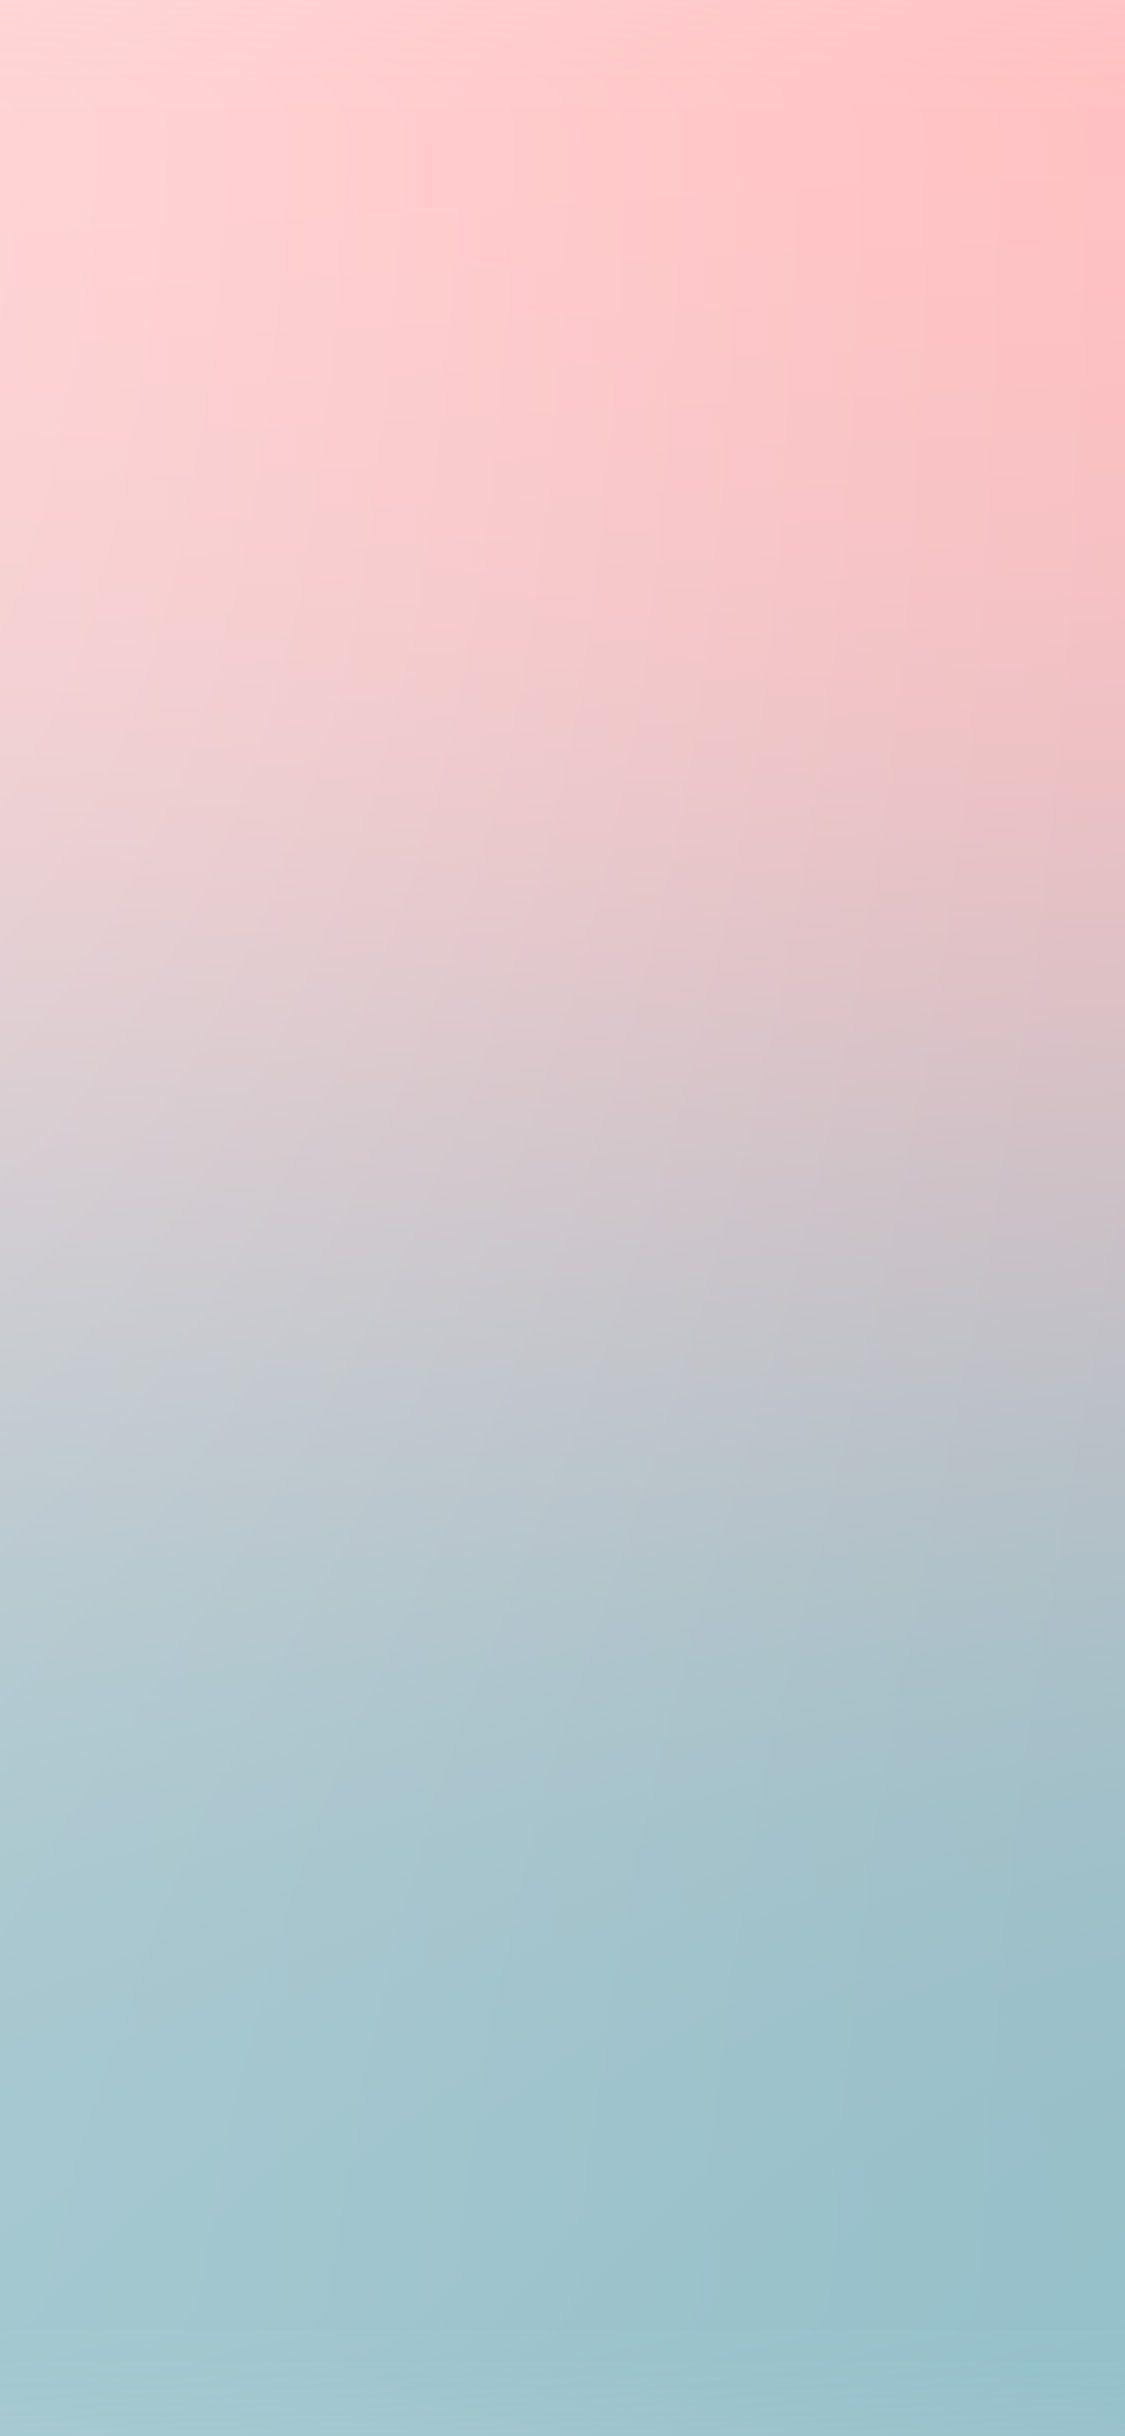 Pink and Blue iPhone Wallpapers - Top Những Hình Ảnh Đẹp